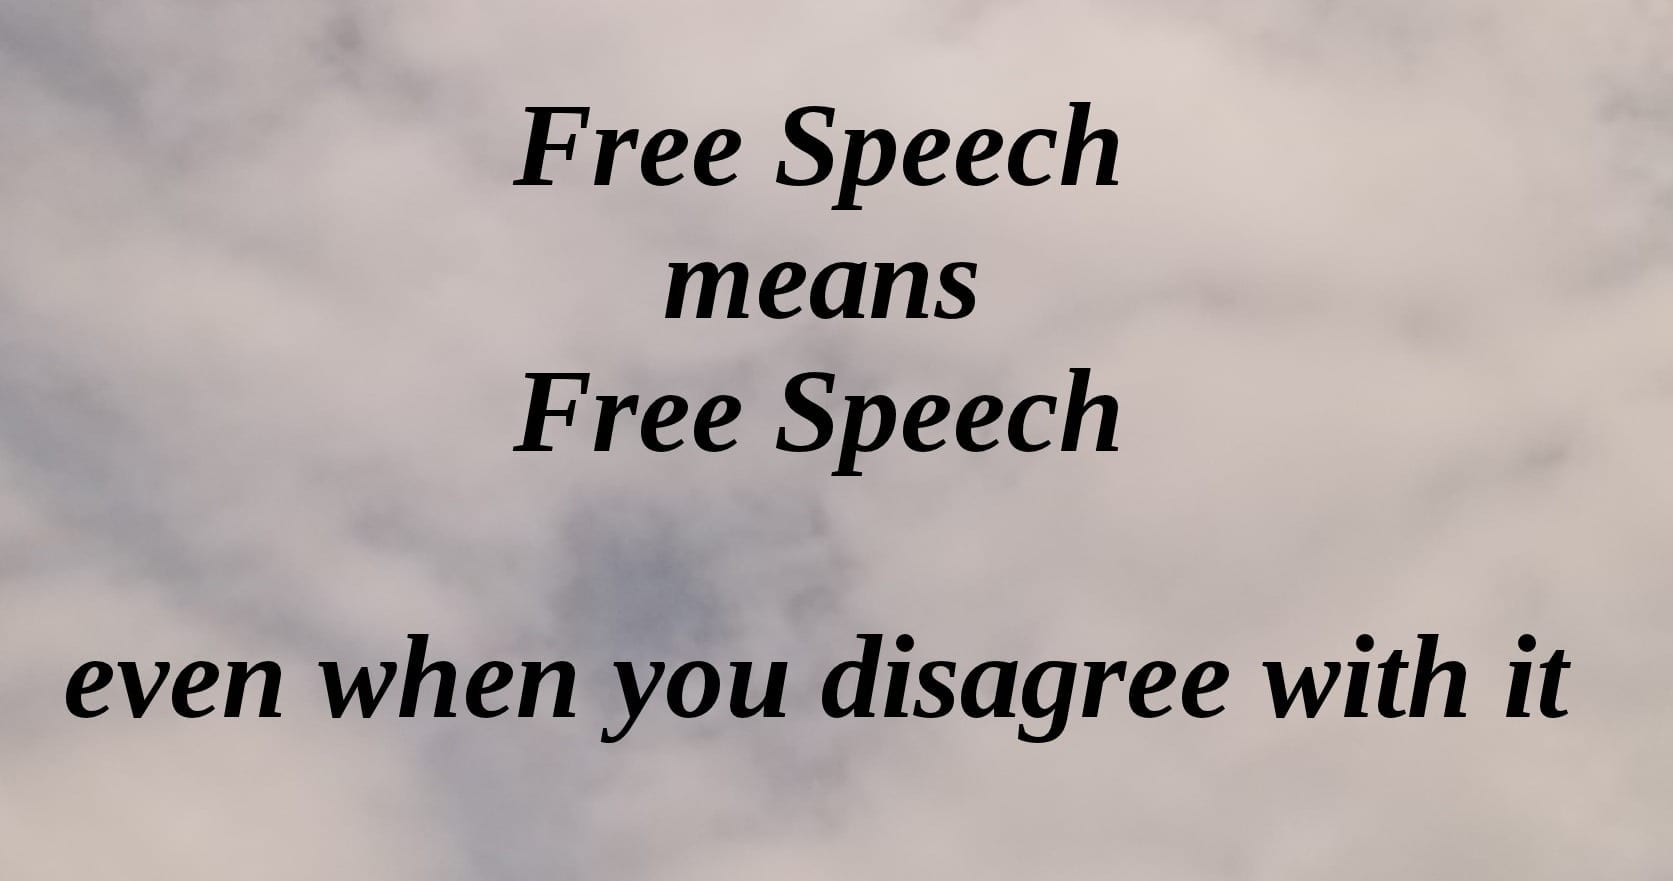 Free Speech Under attack